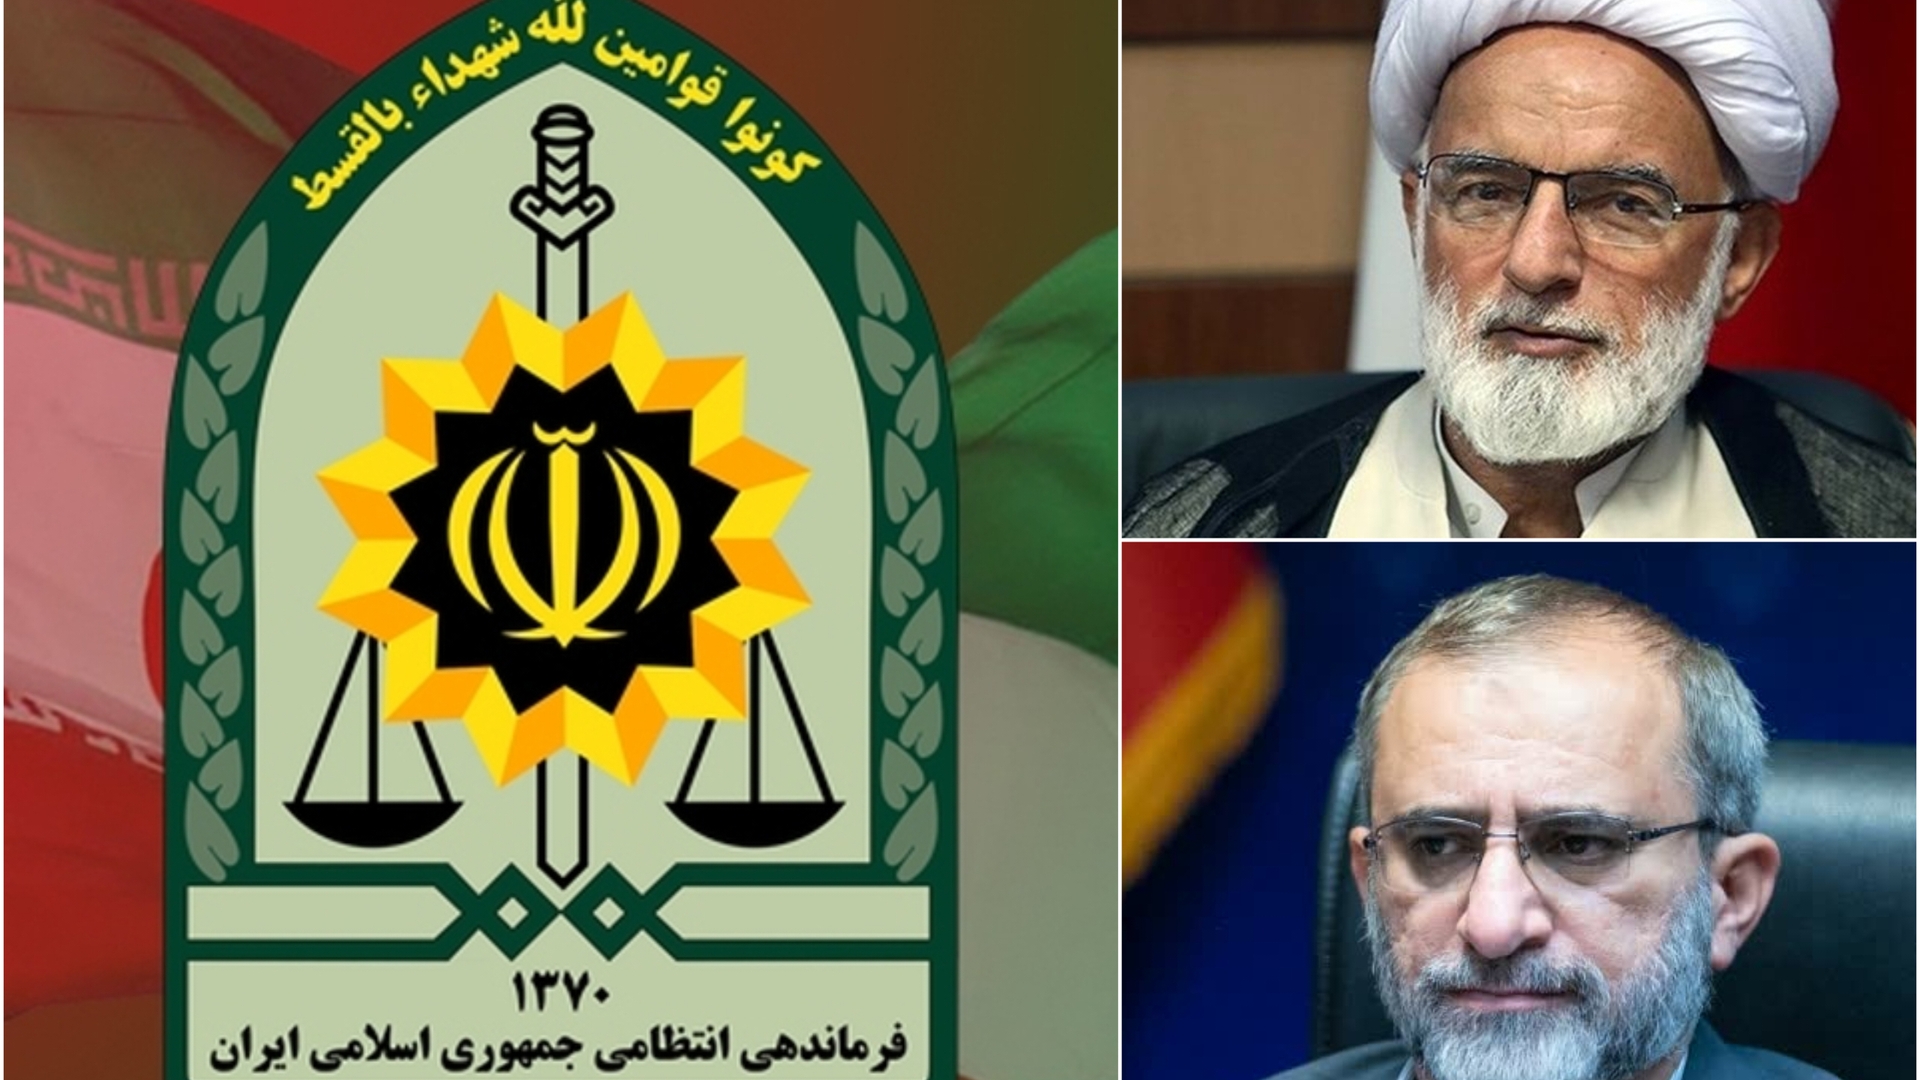 نماینده ولی فقیه و استاندار مرکزی هفته نیروی انتظامی را تبریک گفتند